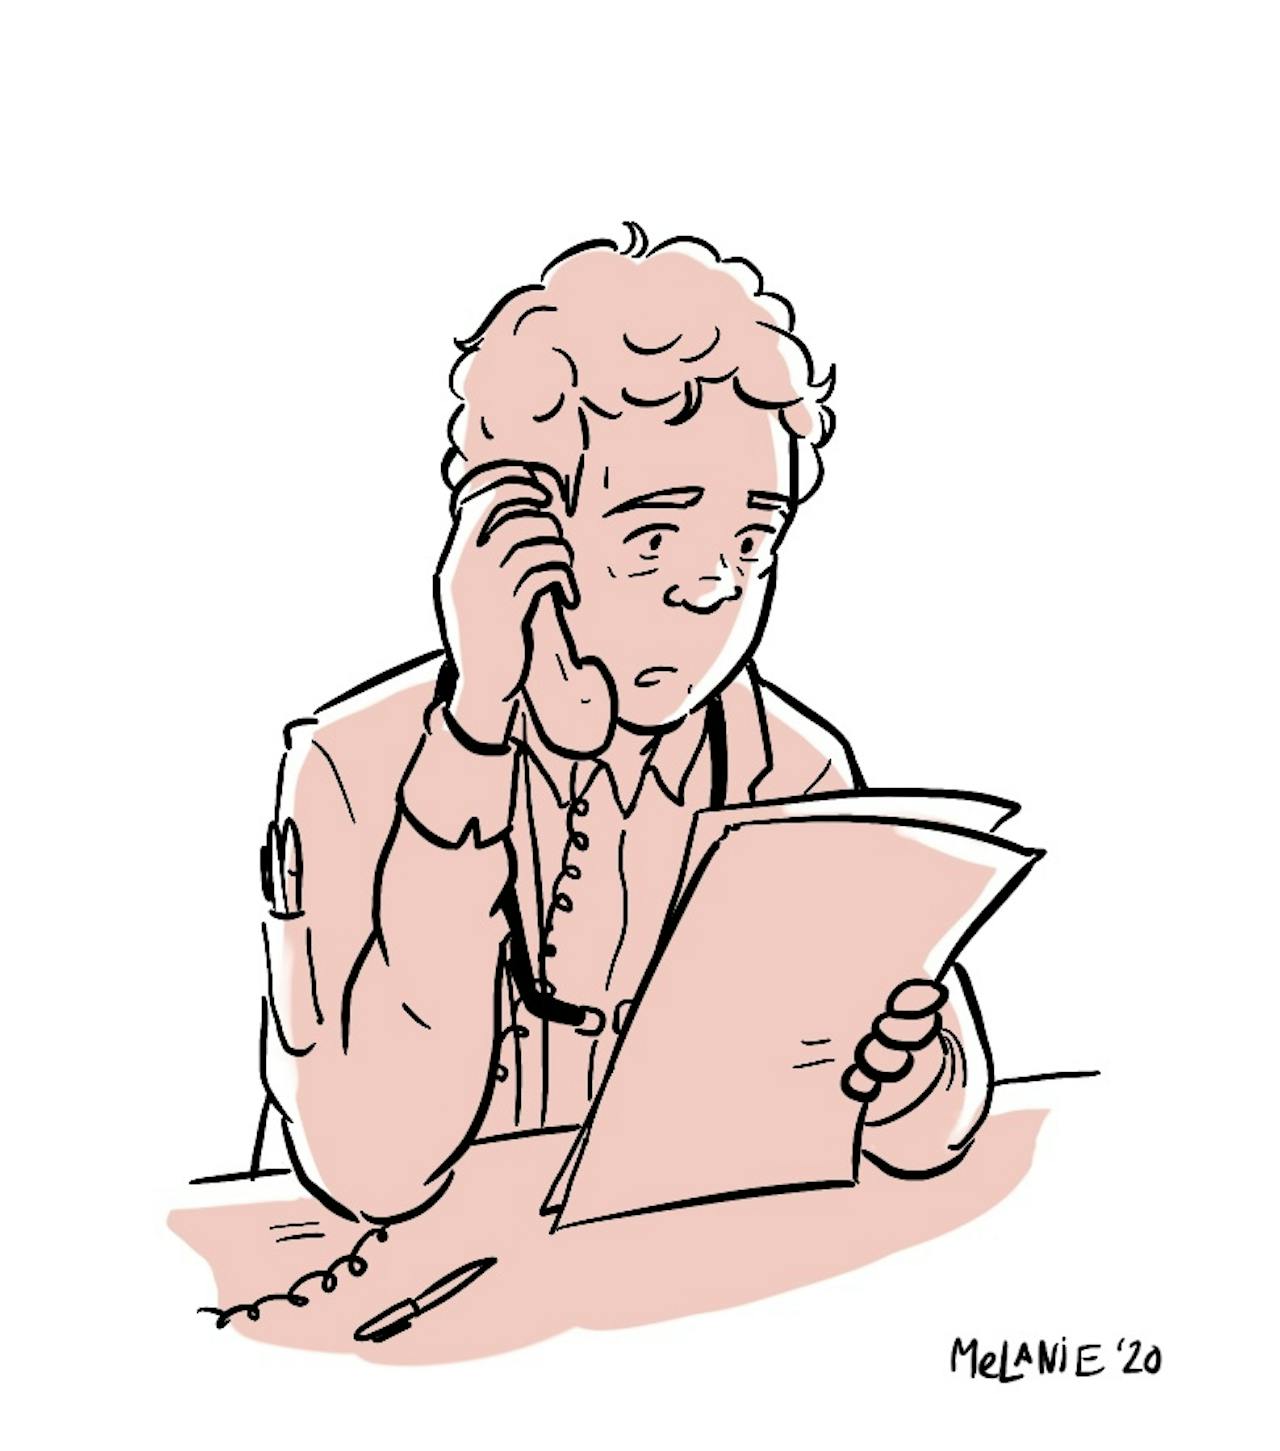 Een cartoon van een persoon die aan de telefoon praat. De persoon heeft een papier in zijn handen.